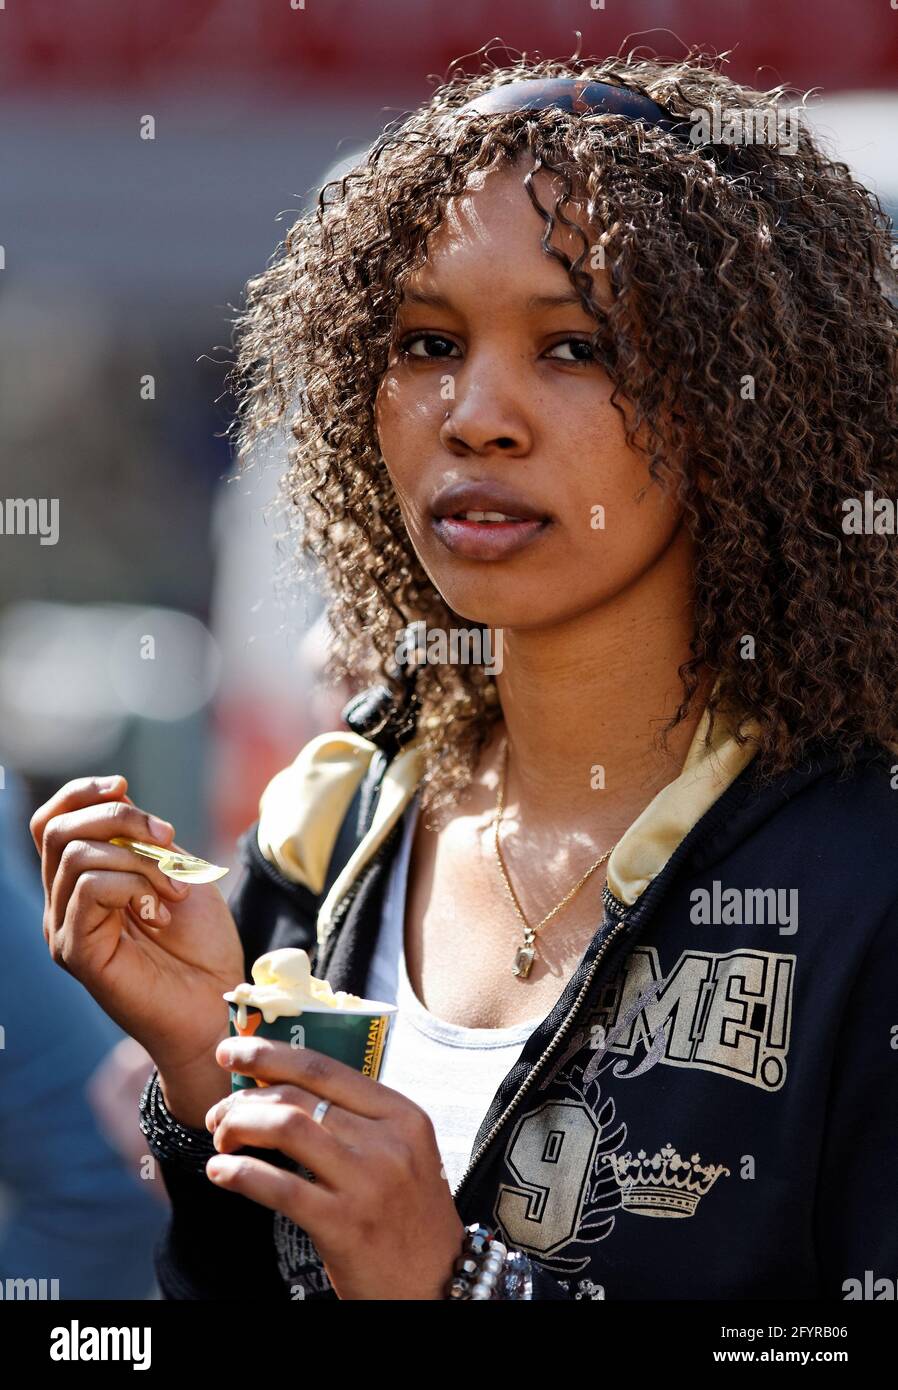 portrait de jeune fille aux cheveux noir bouclés mange un cornet de glace Stock Photo